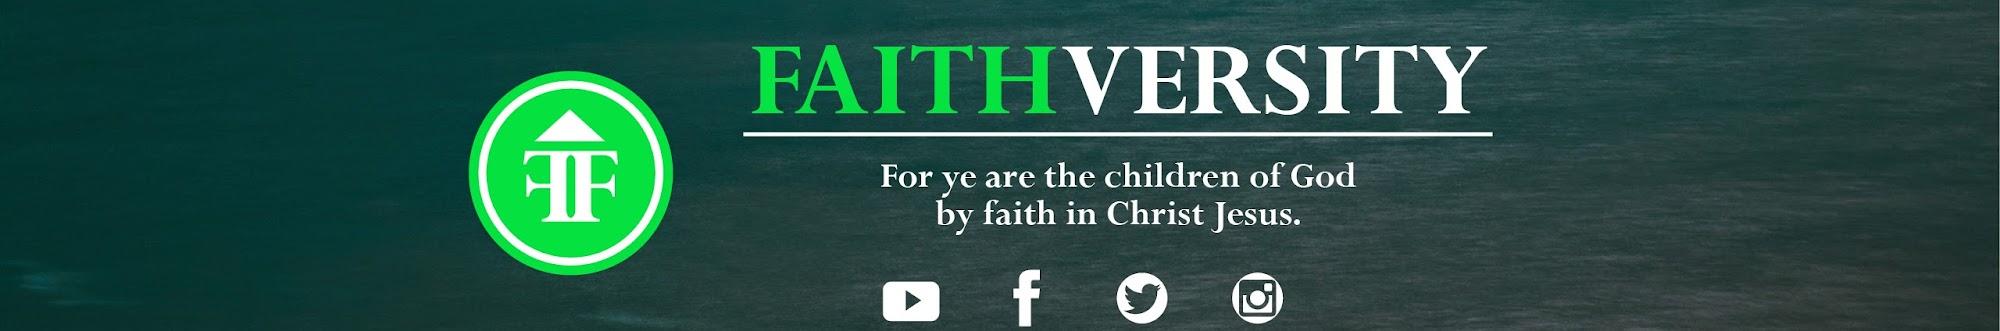 Faithversity